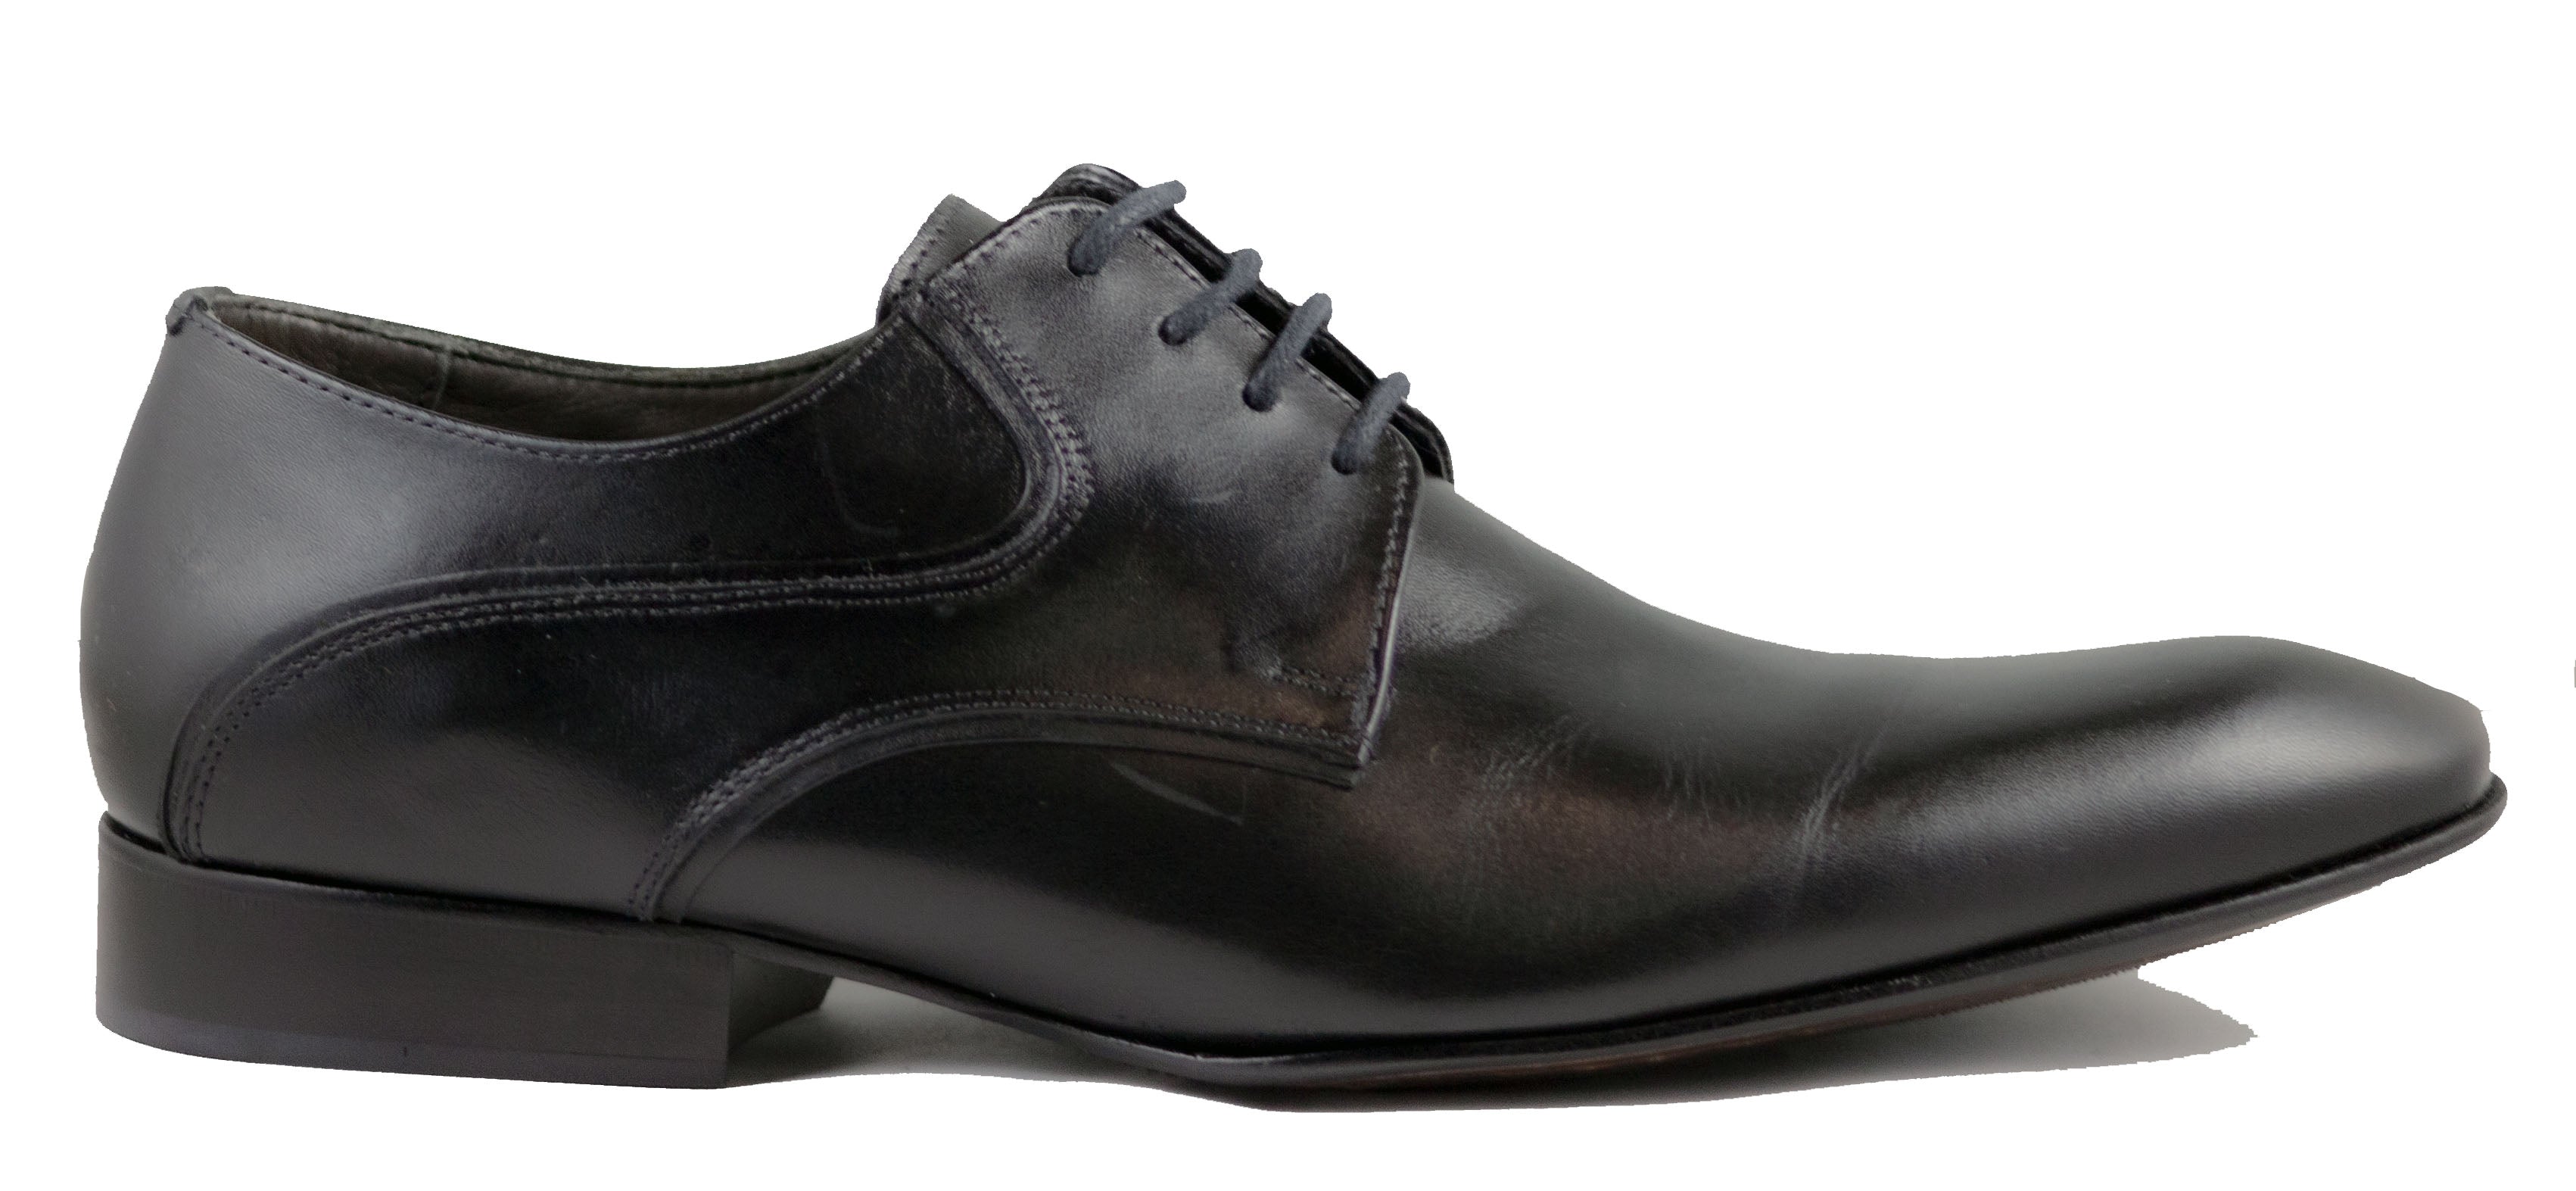 Mario Samello  Men's Black Leather Plain Toe Dress Shoes  Lambri 10